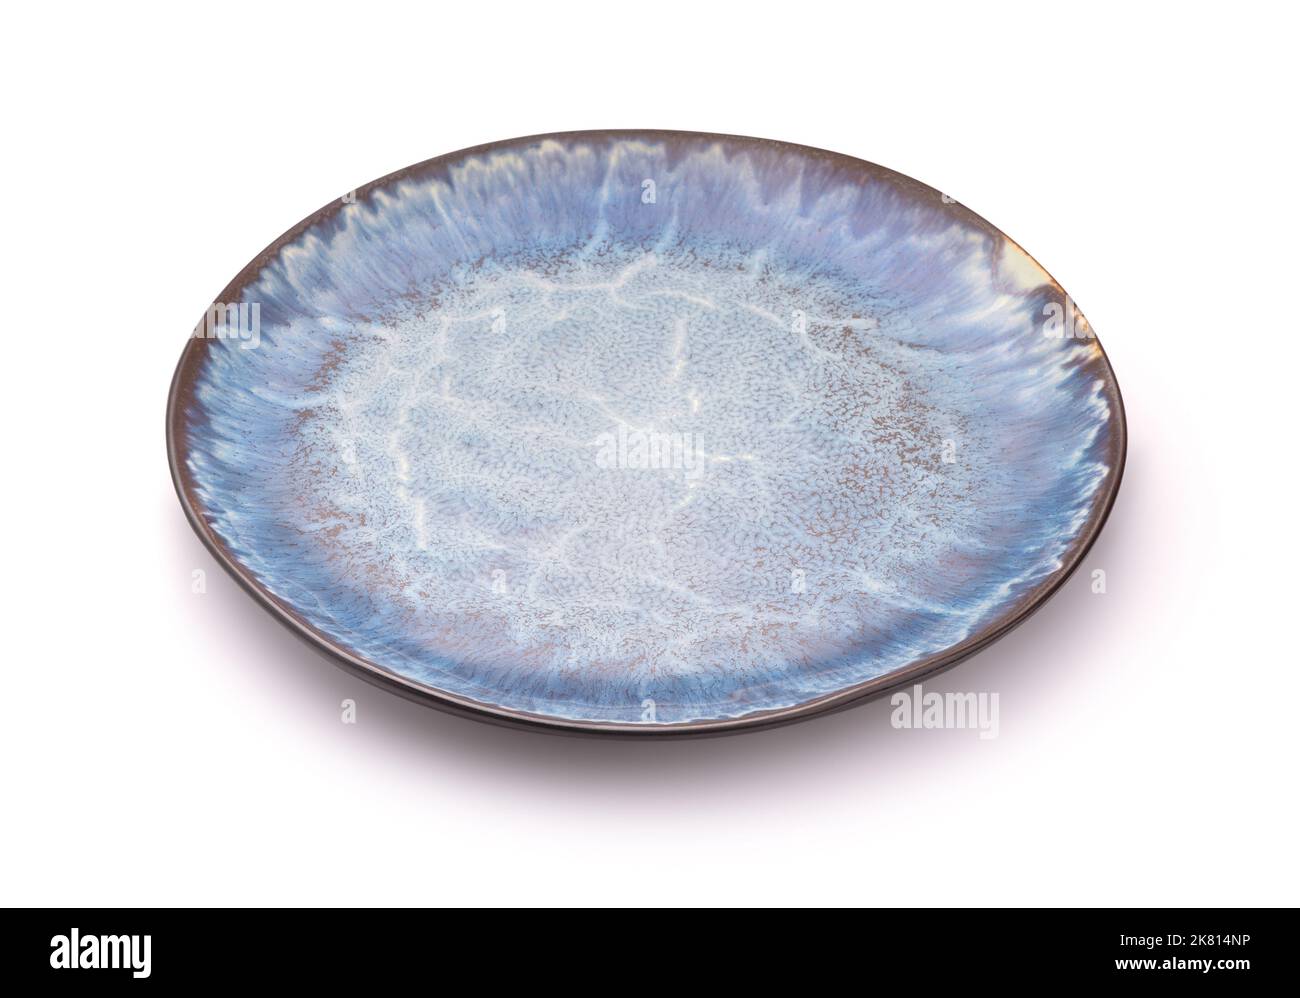 Plaque en céramique artisanale bleue vide isolée sur blanc Banque D'Images